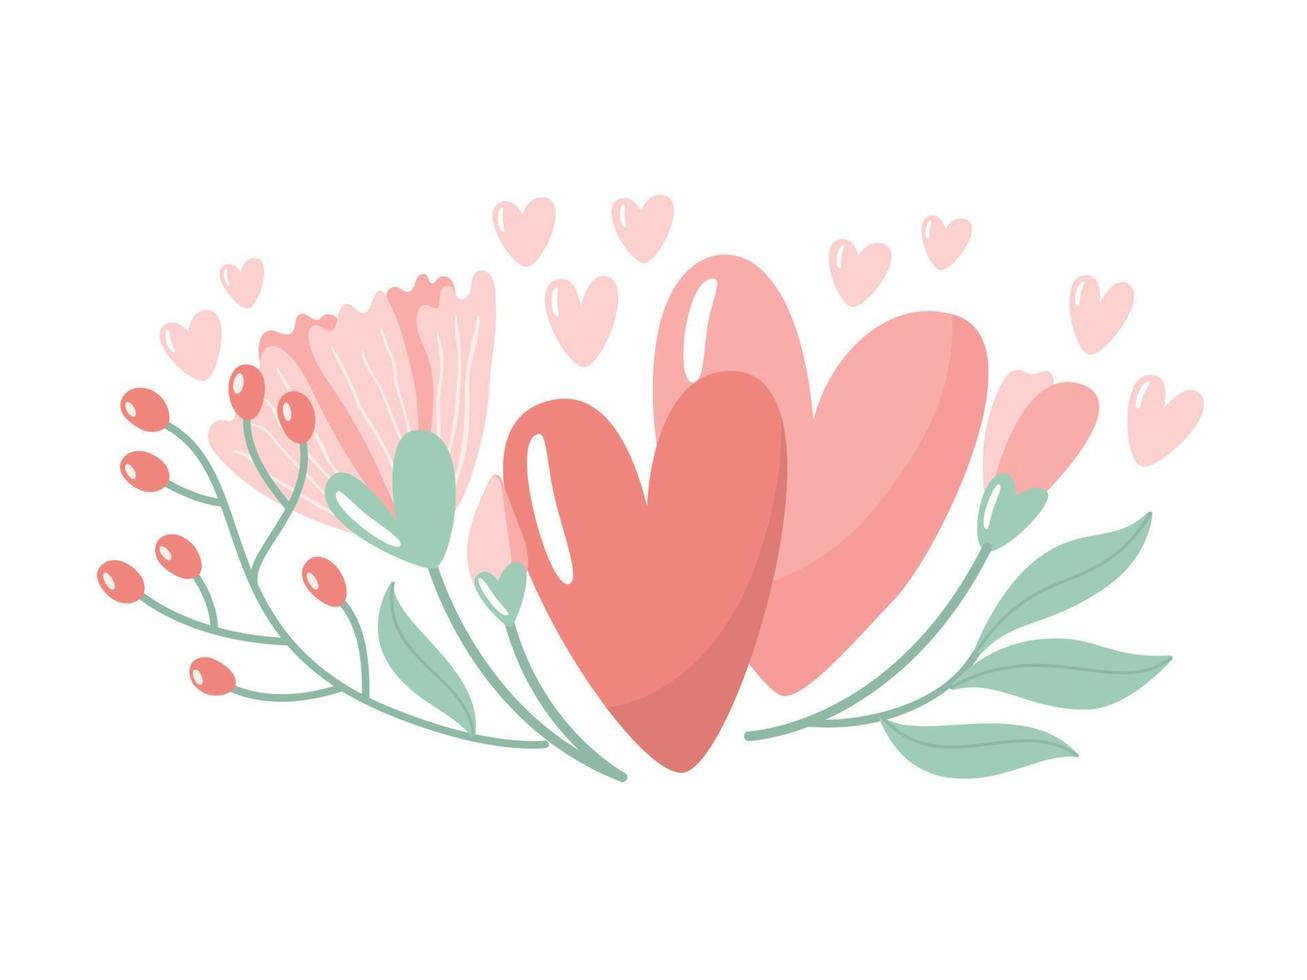 ilustração vetorial para dia dos namorados. dois corações com flores sobre fundo branco. cartão criativo com elementos decorativos desenhados à mão. design feminino elegante. vetor